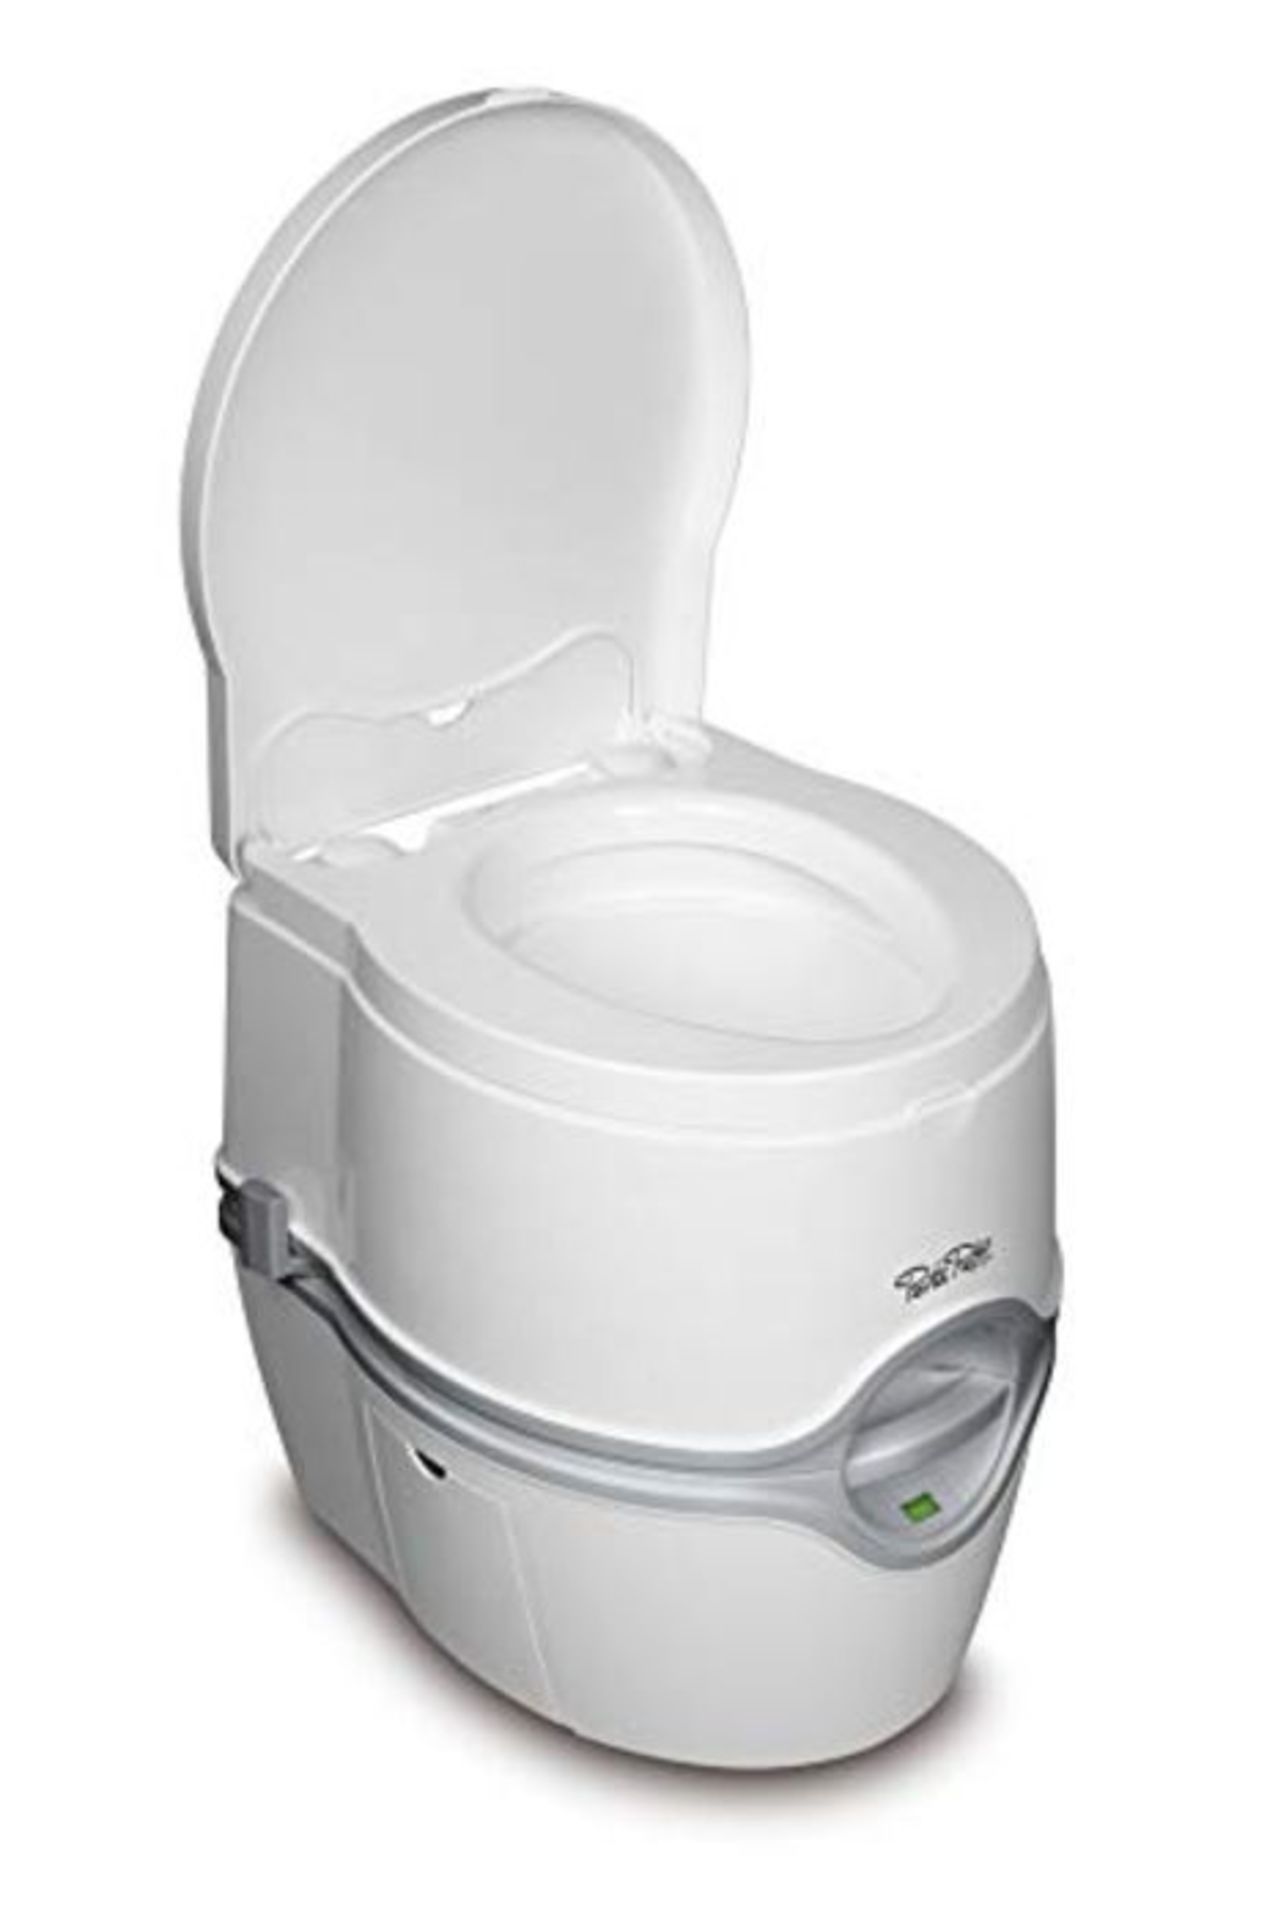 RRP £129.00 Thetford 92306 Porta Potti 565E (Electric) Portable Toilet, White-Grey, 448 x 388 x 45